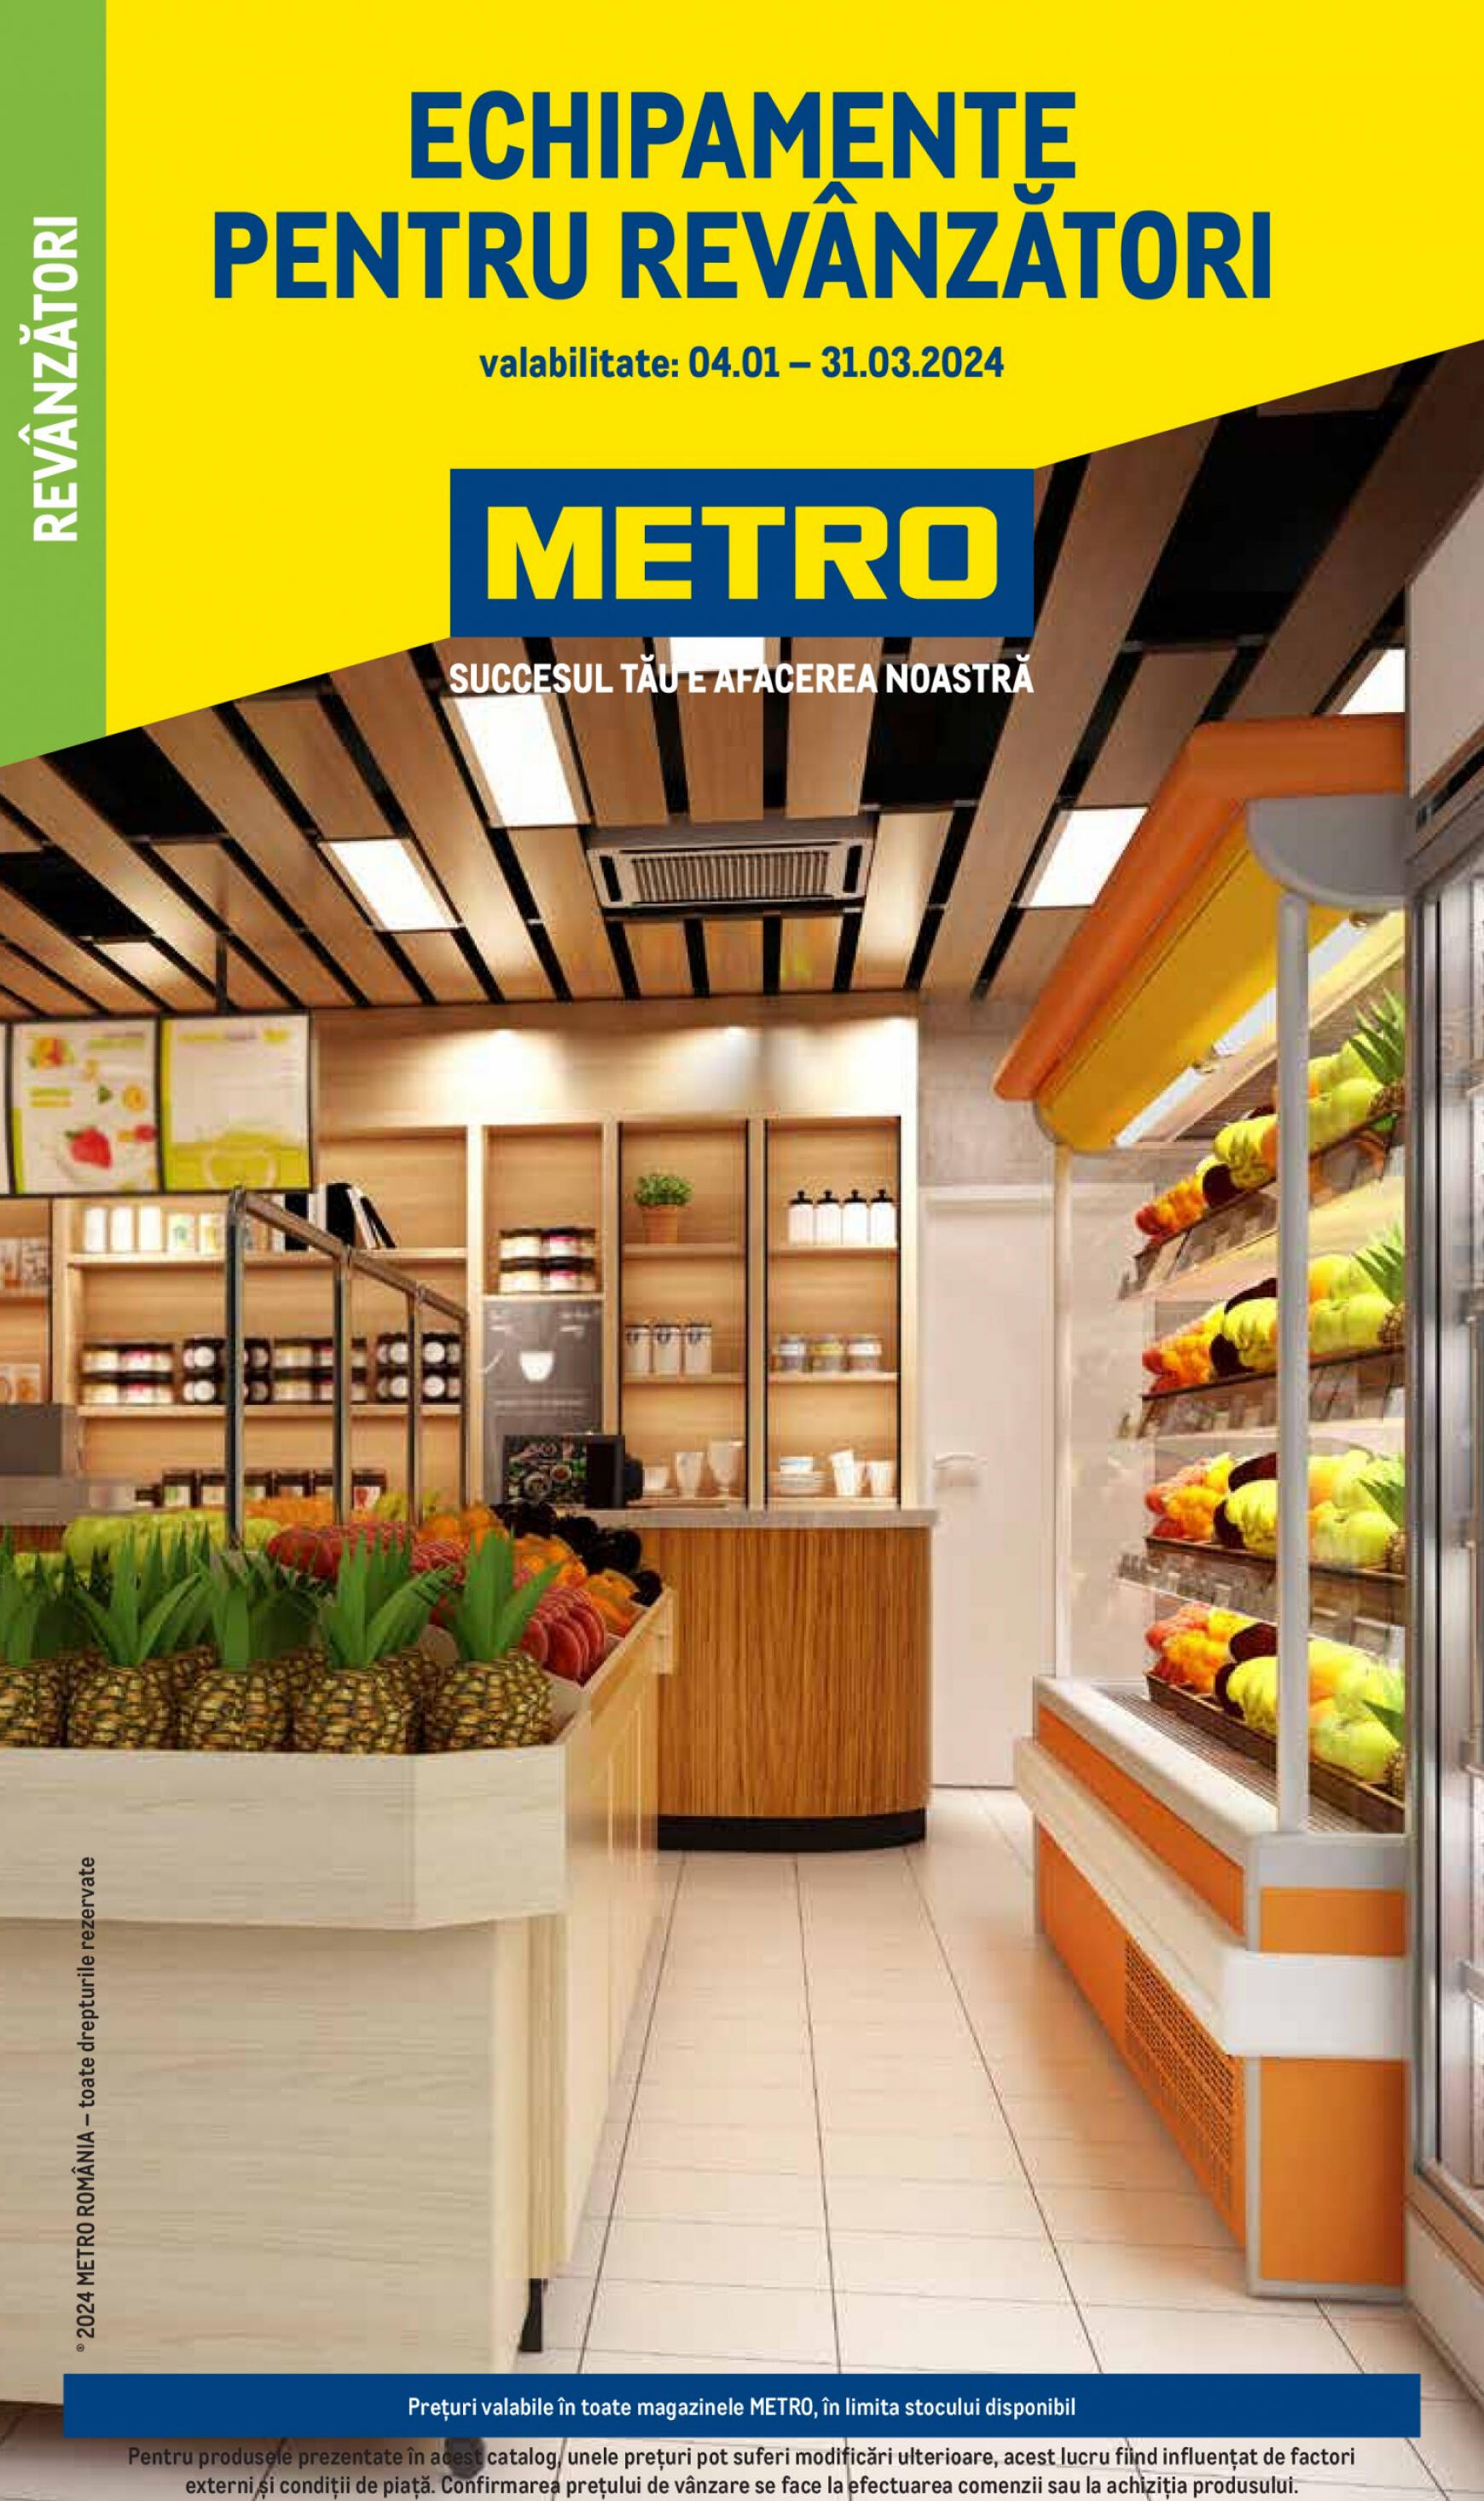 metro - Metro - Echipamente pentru magazinul tau valabil de 04.01.2024